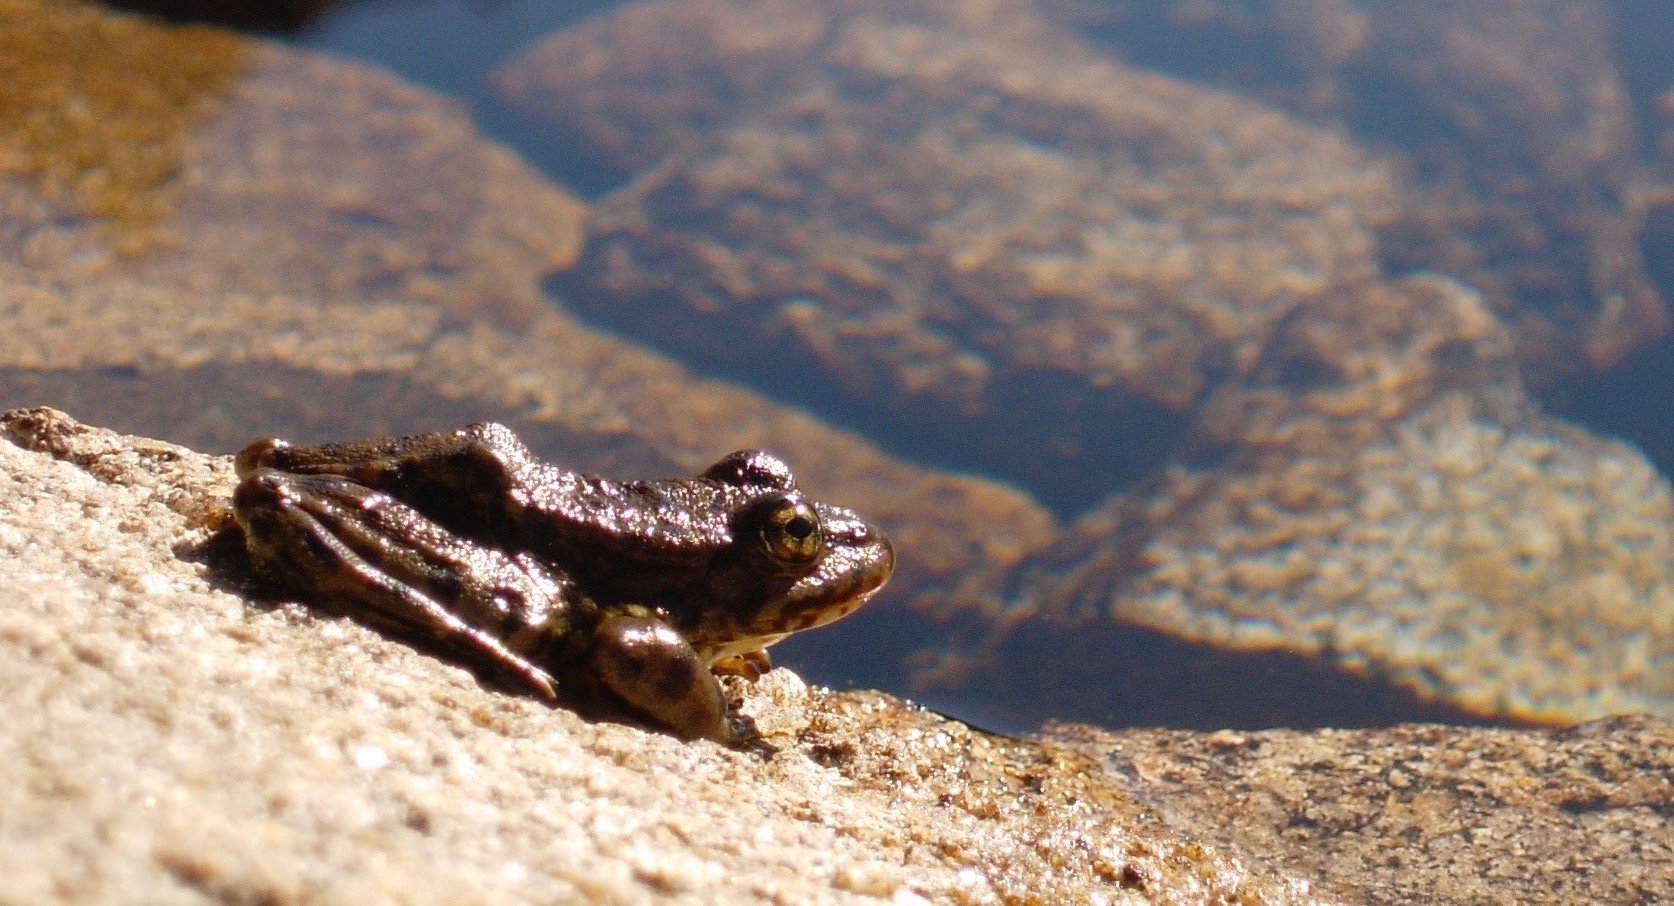 Healthy-looking frog in Sierra Nevada, California.